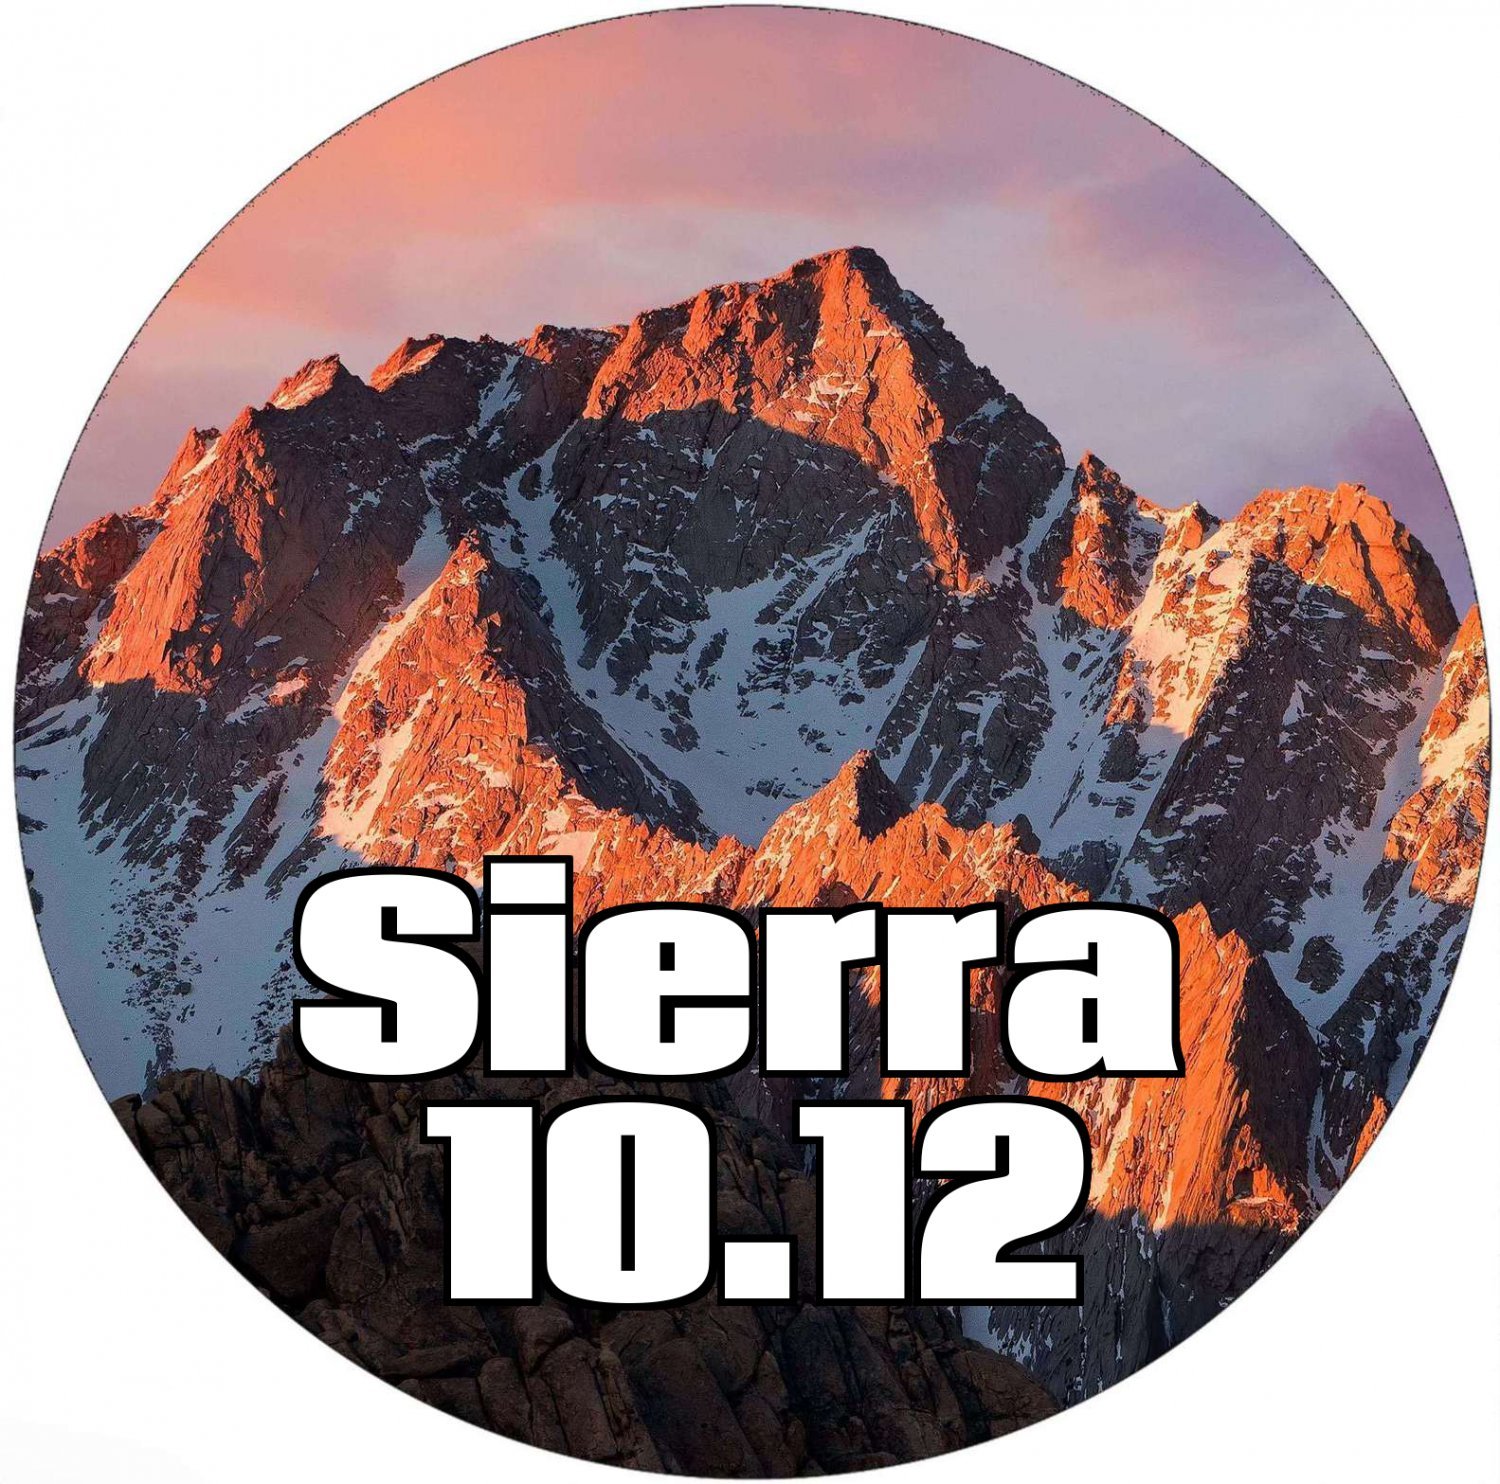 macOS 10.12 Sierra DVD Operating System Full Install, Upgrade, Repair bootable media